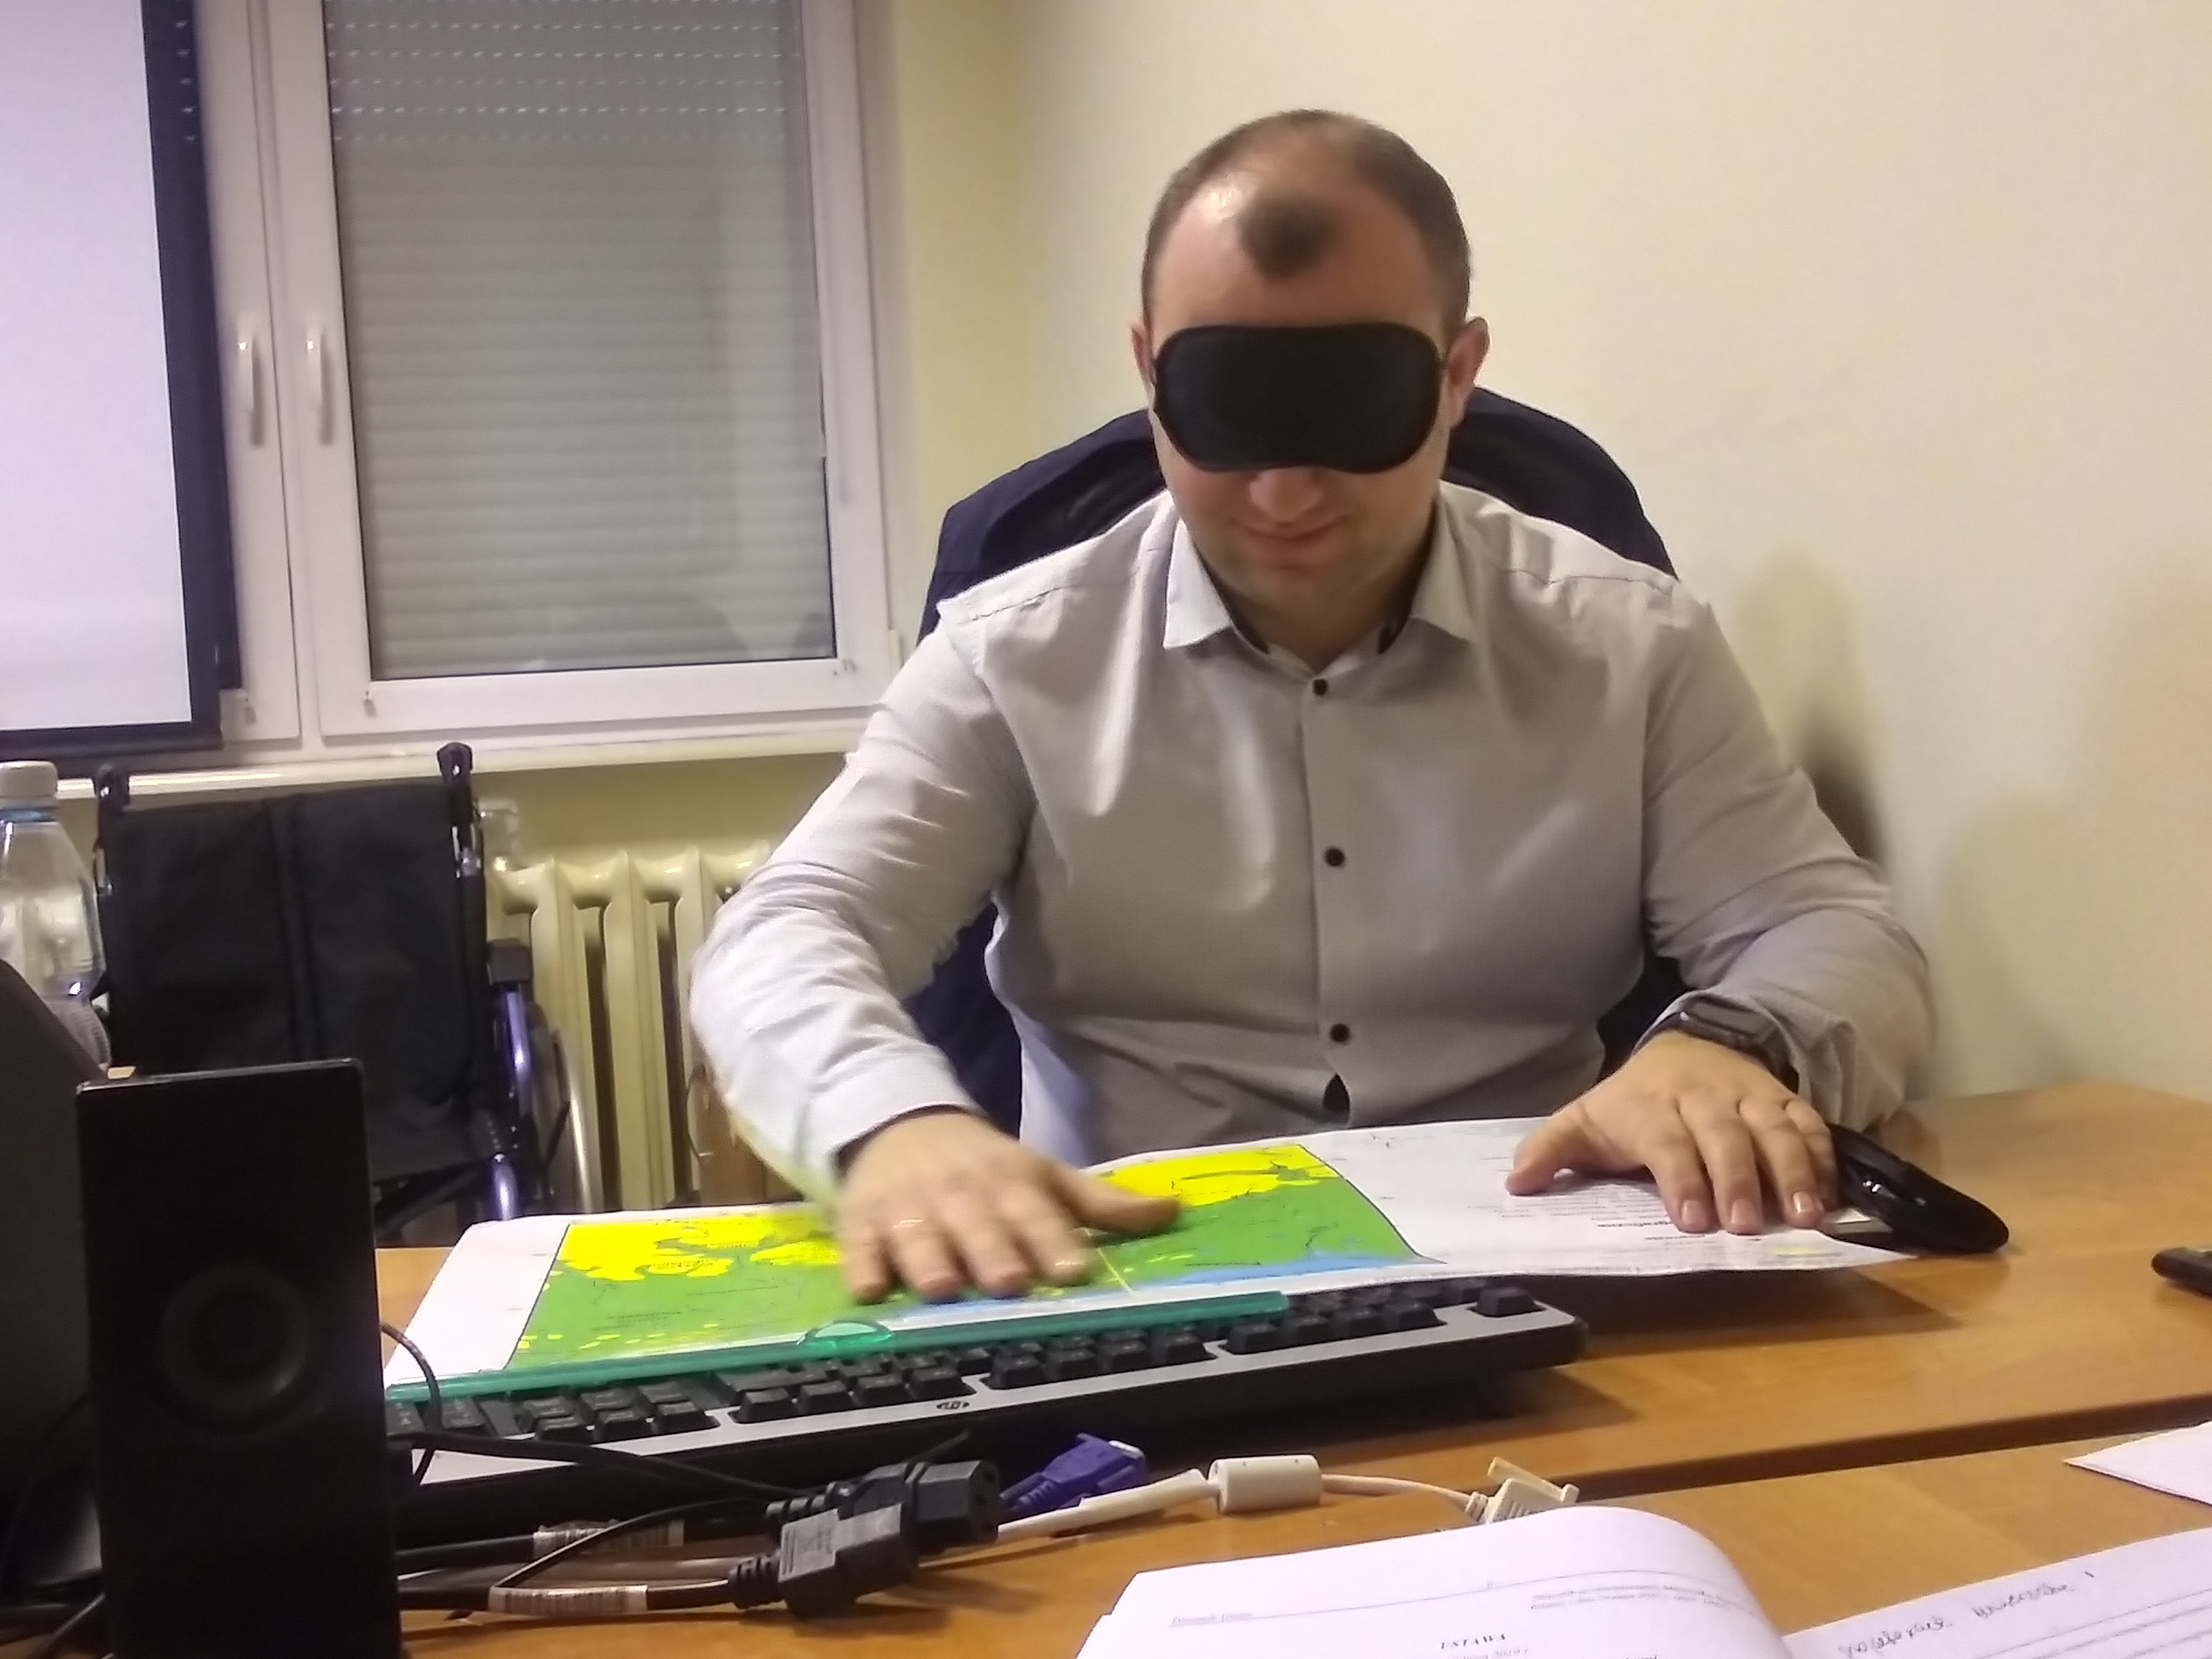 Zdjęcie przedstawia symulację niepełnosprawności wzrokowej - pracownik z zasłoniętymi oczami próbuje czytać mapę w piśmie Brajla